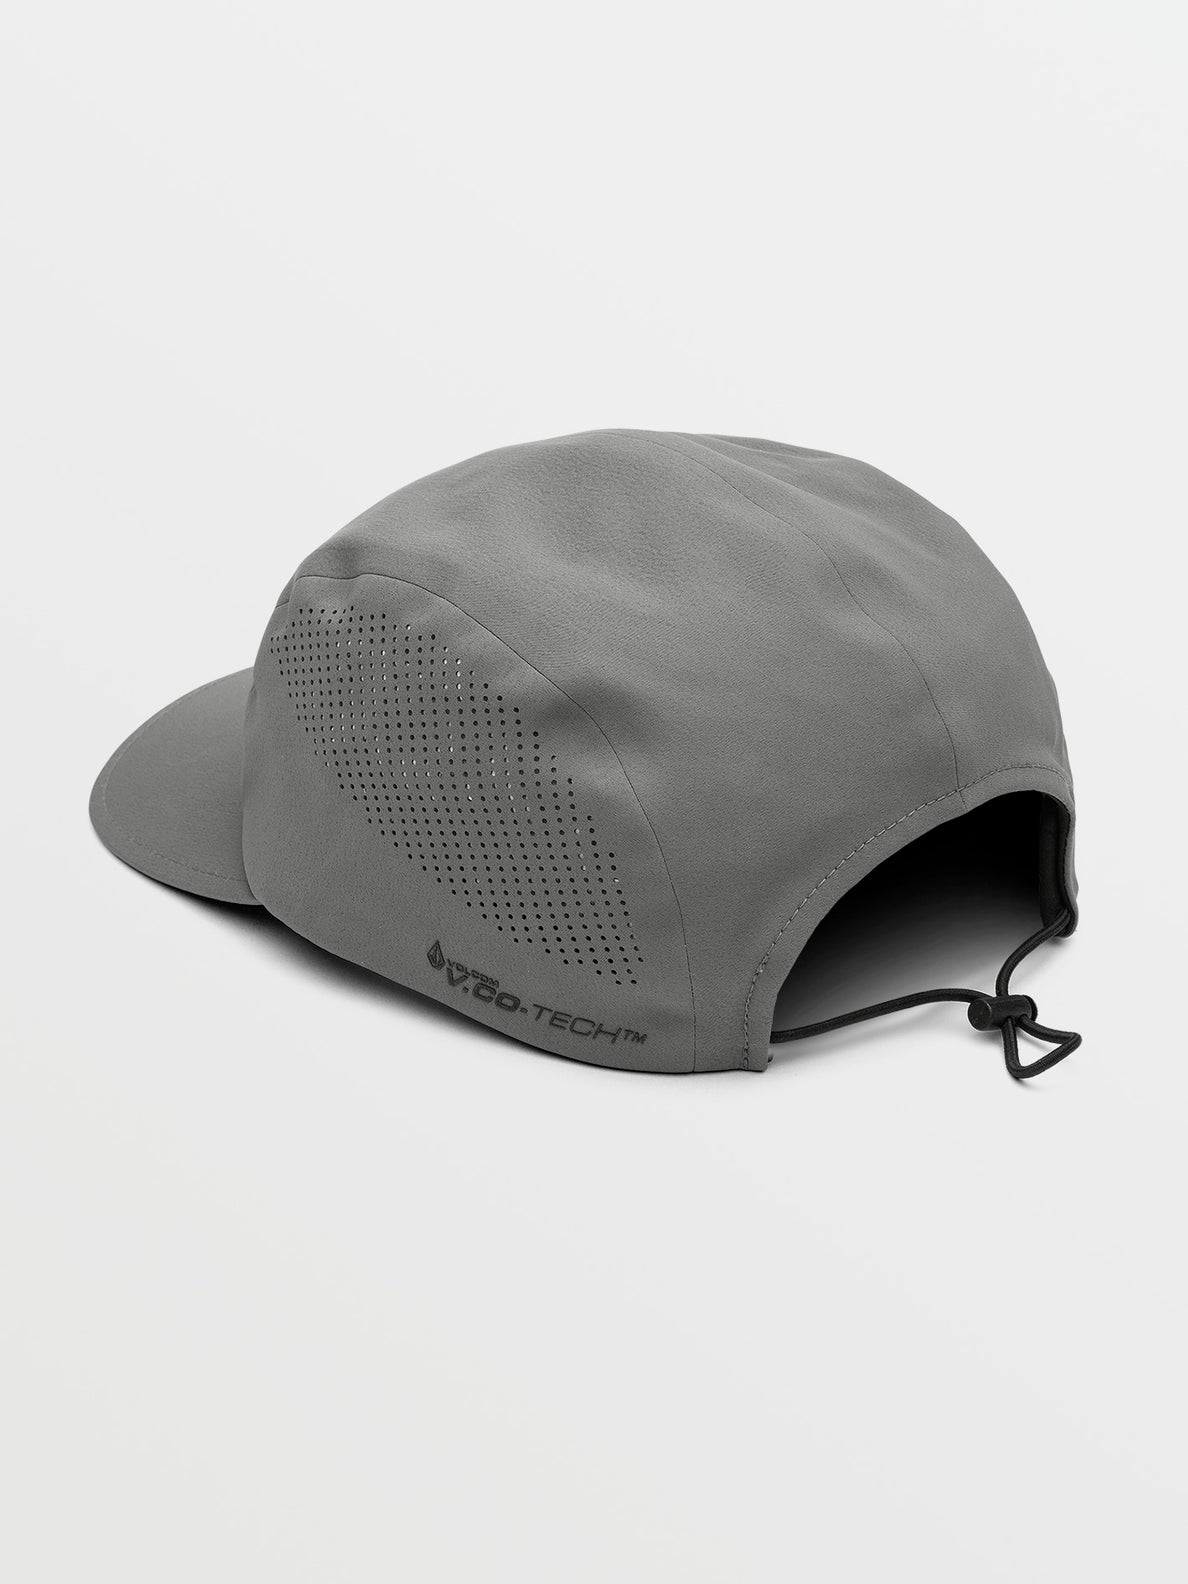 Stone Tech Delta Camper Adjustable Hat - Pewter